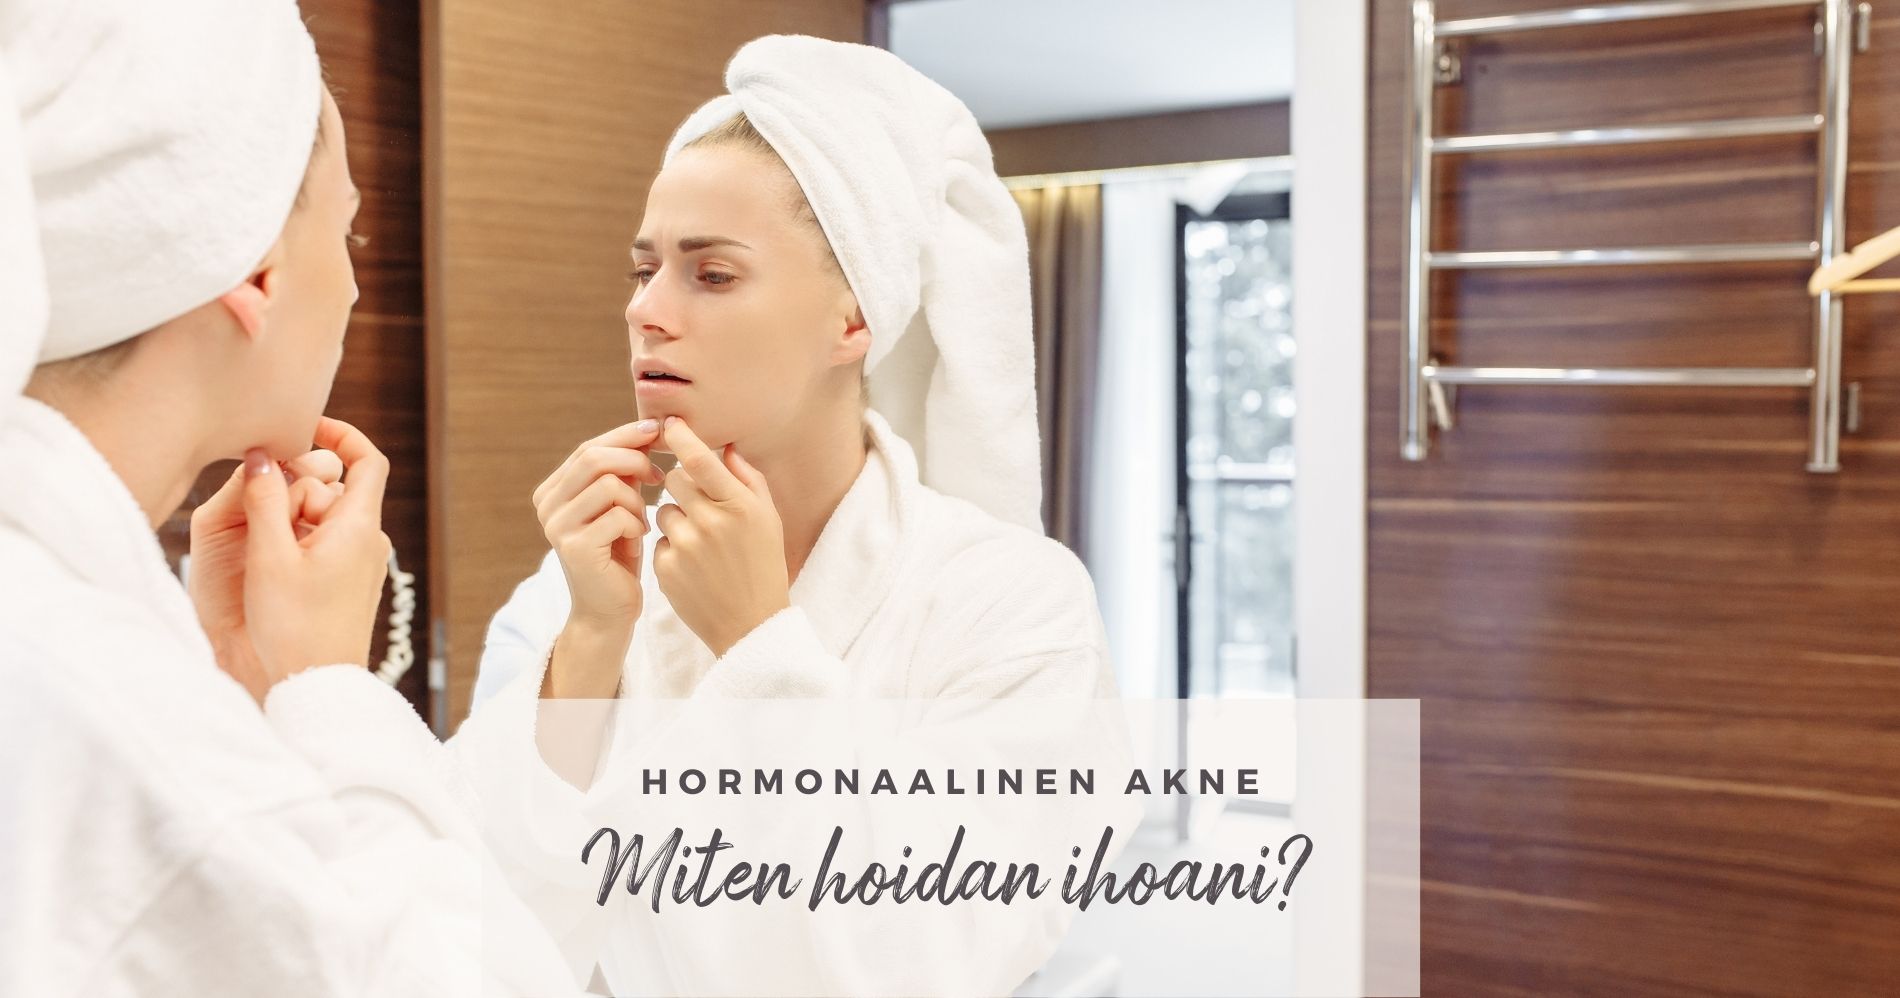 Hormonaalinen akne - Miten hoidan ihoani?